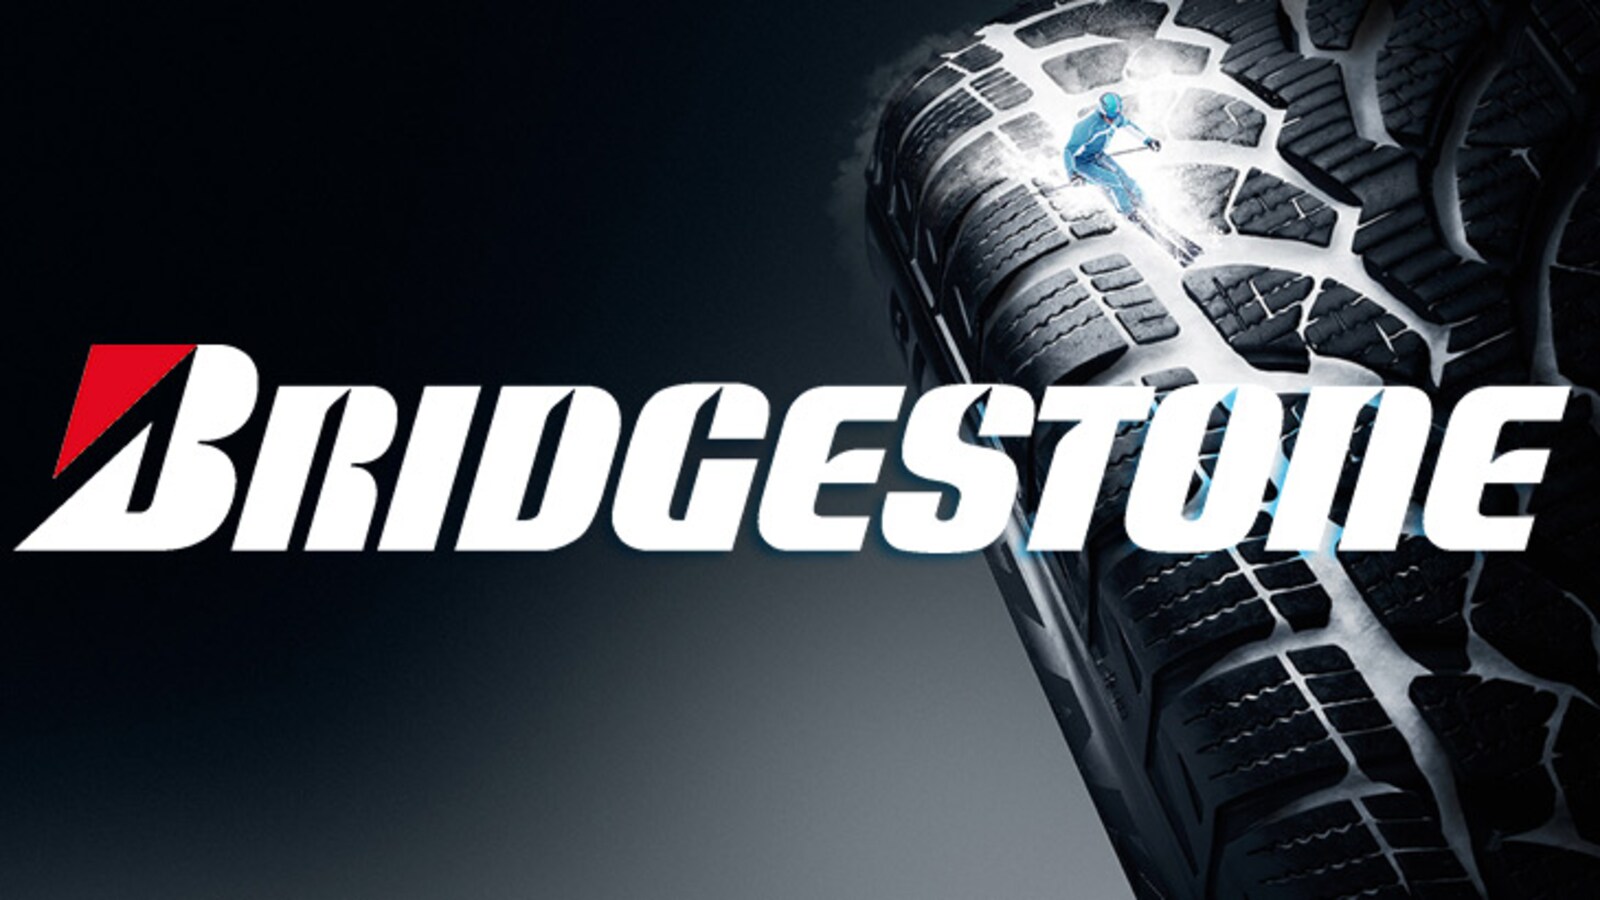 logotipo da bridgestone firestone